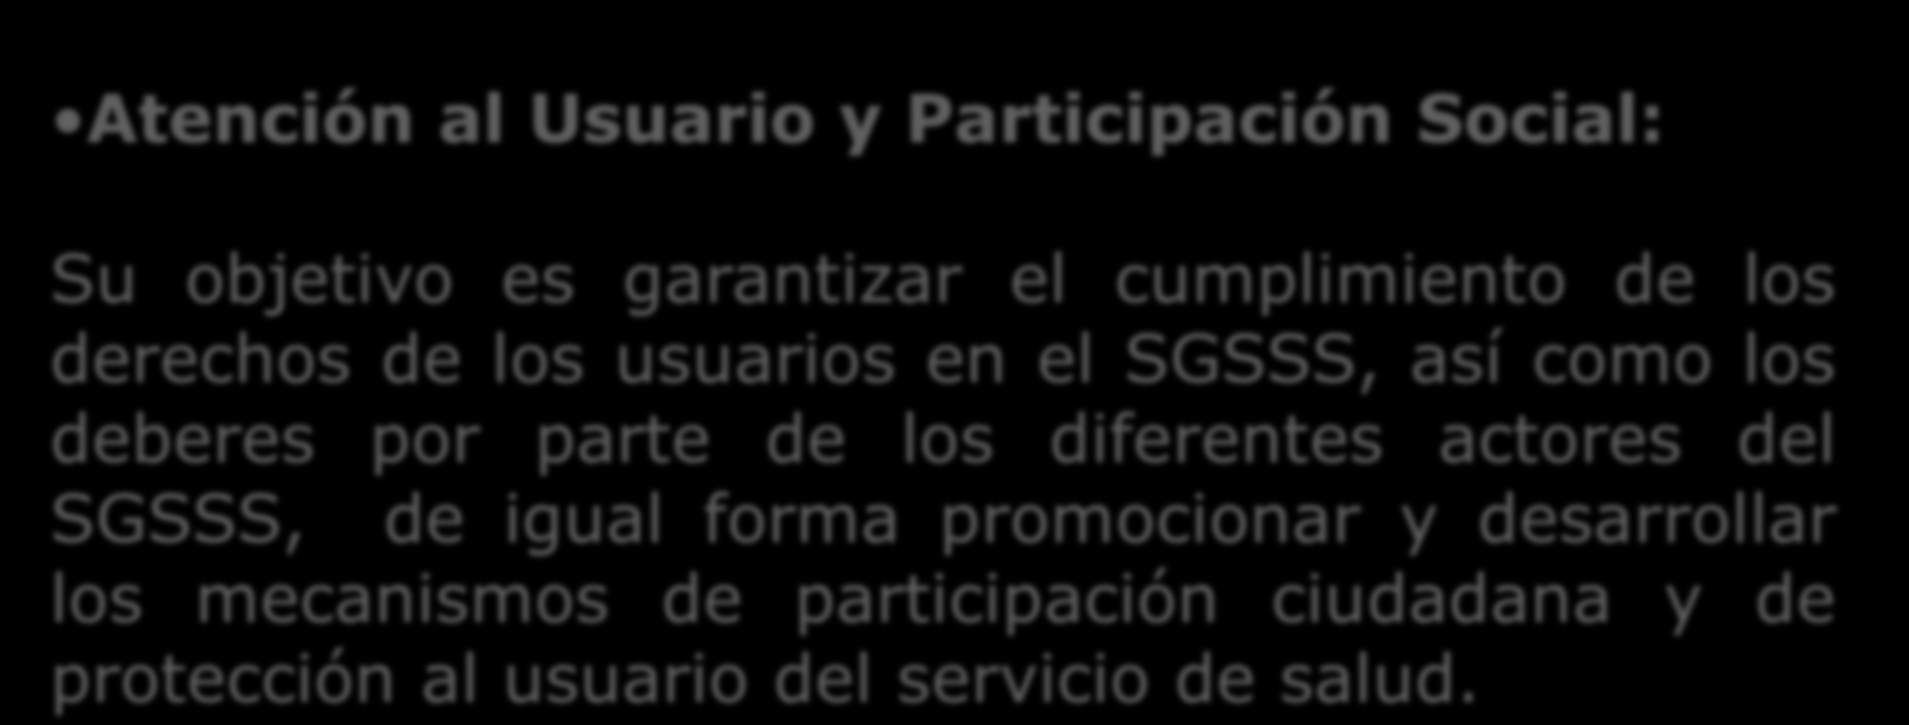 Atención al Usuario y Participación Social: Su objetivo es garantizar el cumplimiento de los derechos de los usuarios en el SGSSS, así como los deberes por parte de